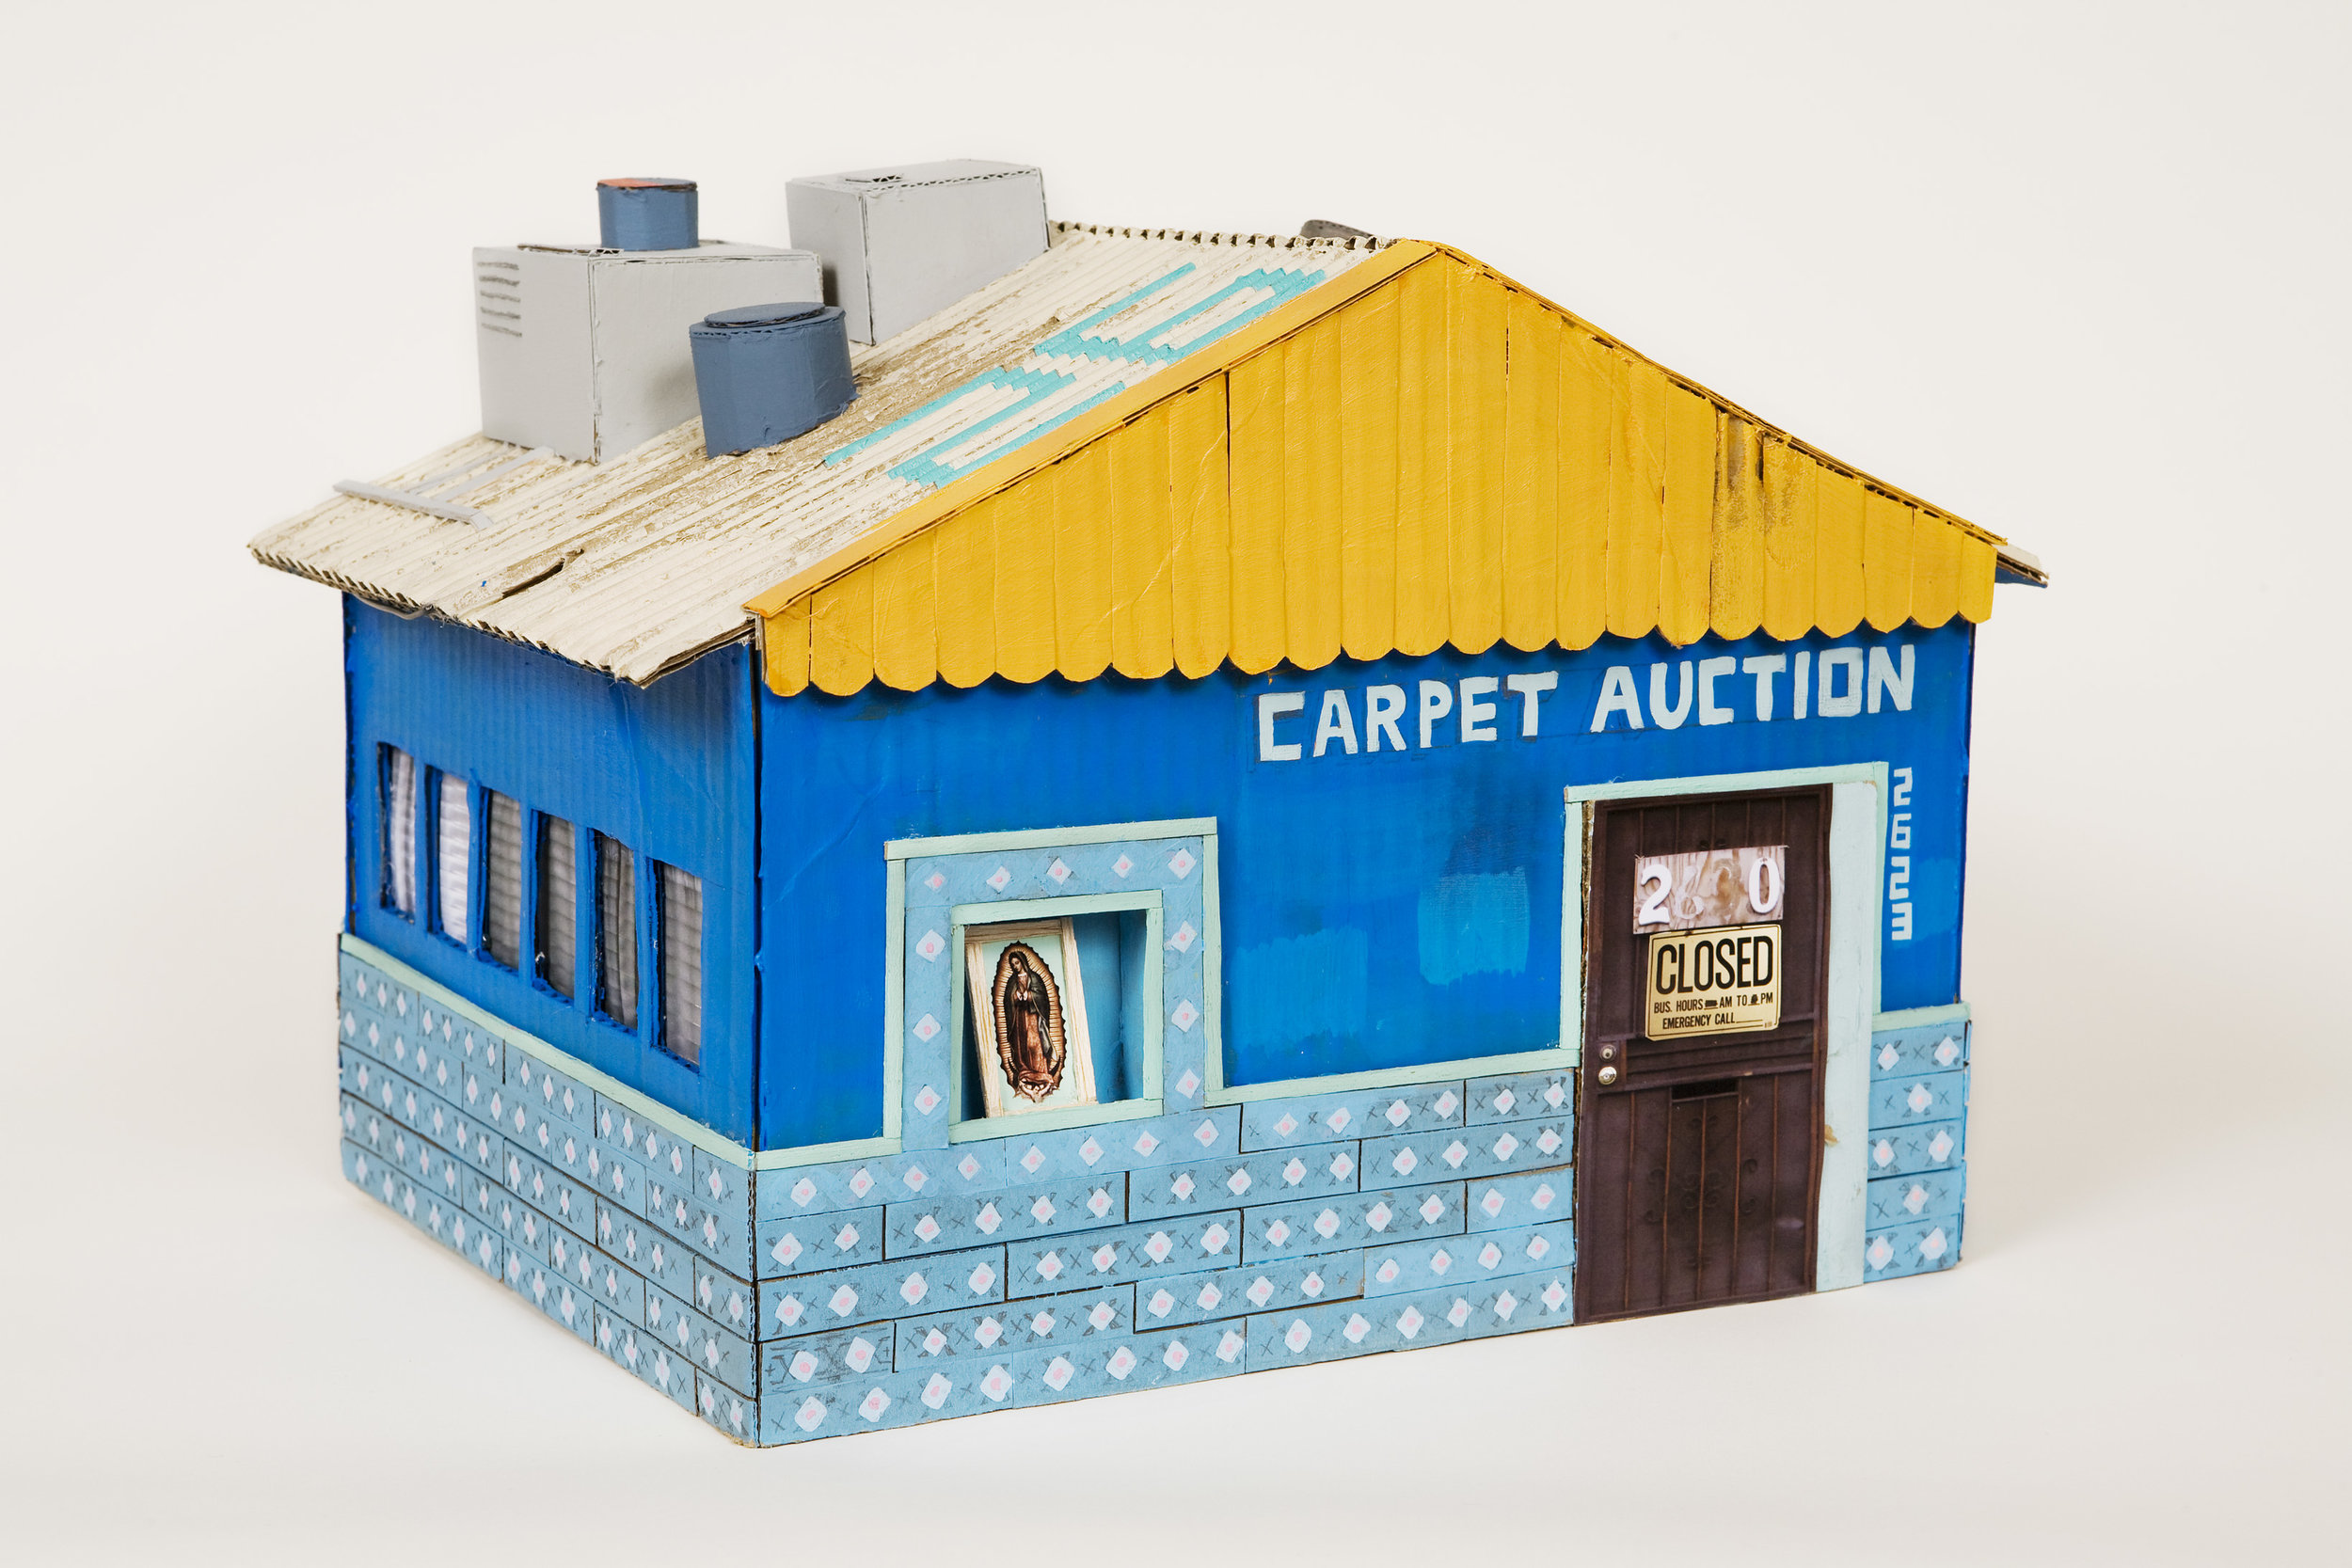 Carpet Auction, 2009